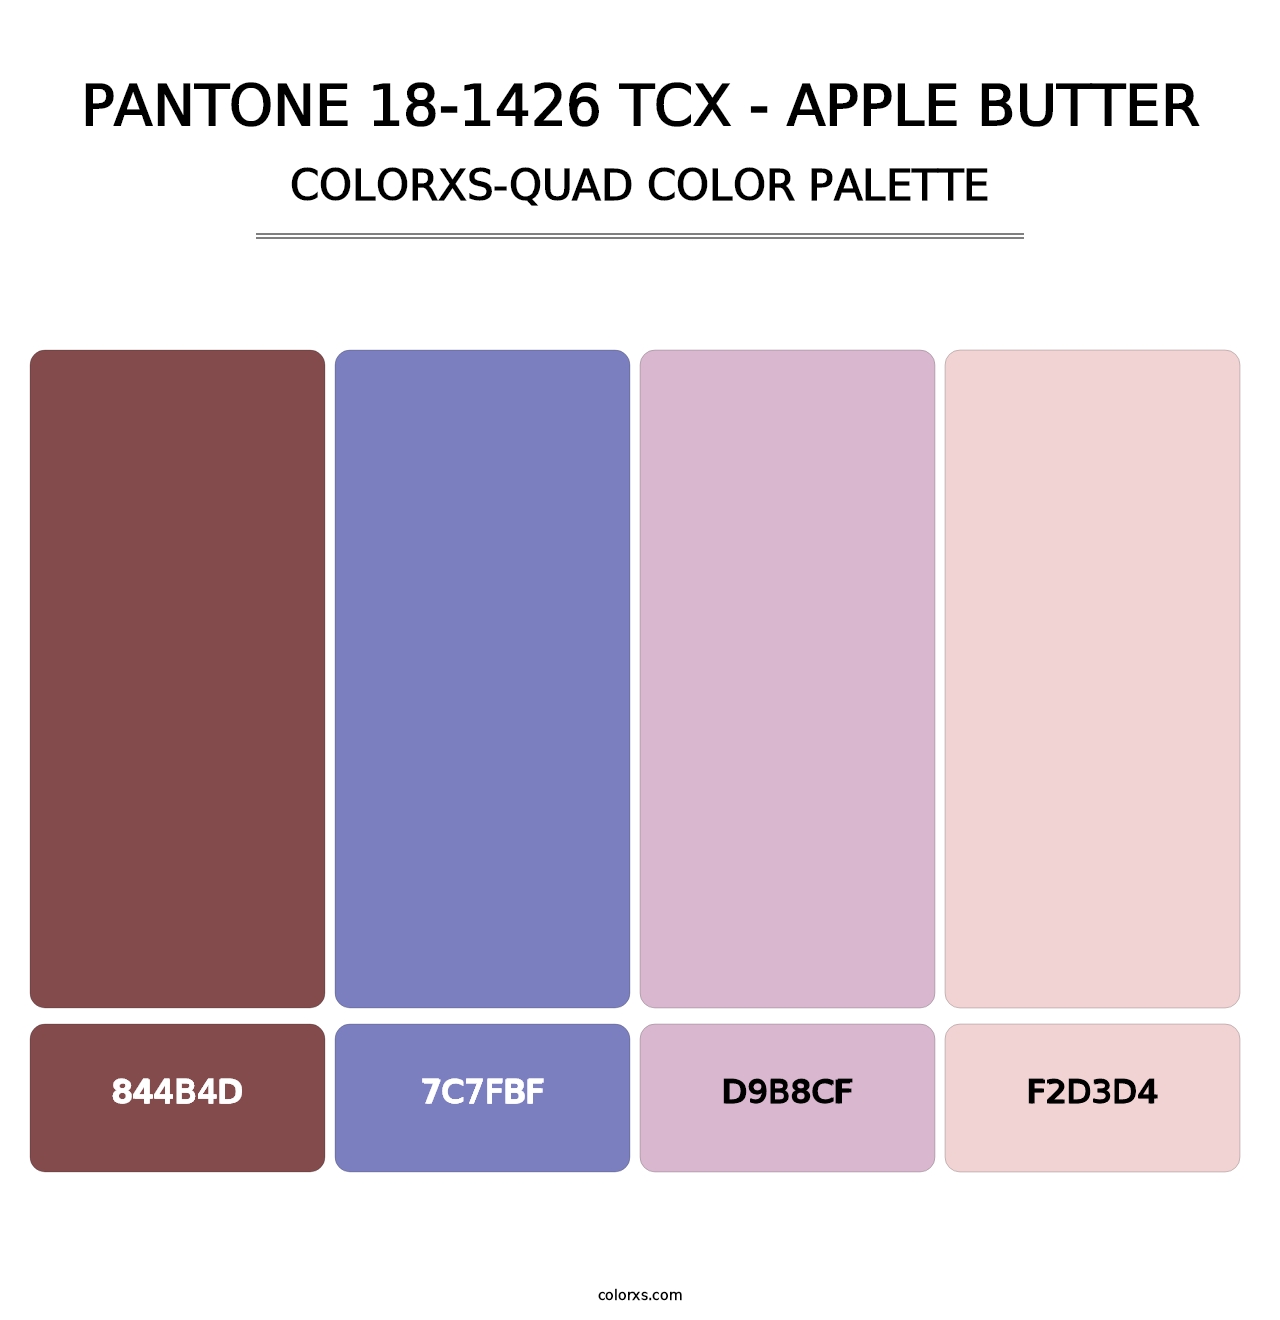 PANTONE 18-1426 TCX - Apple Butter - Colorxs Quad Palette